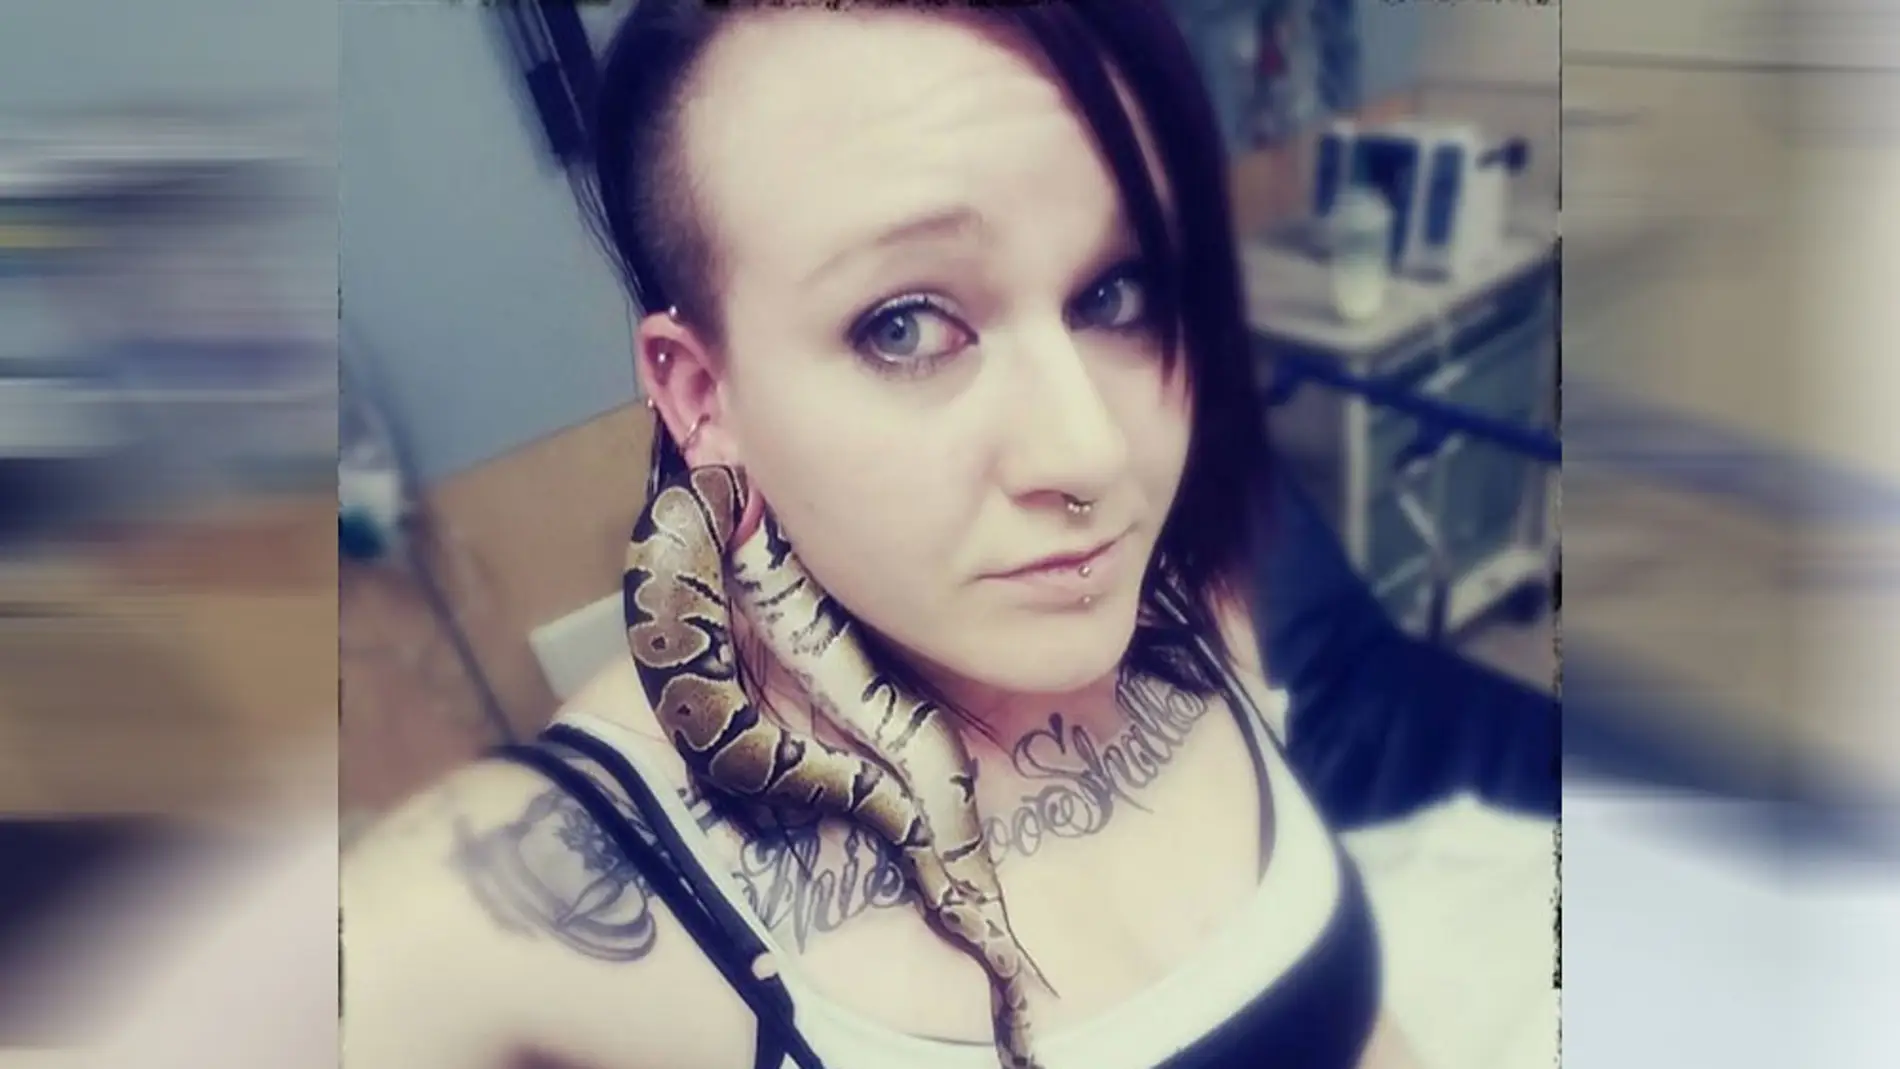 Serpiente atrapada en la oreja de Ashley Glawe